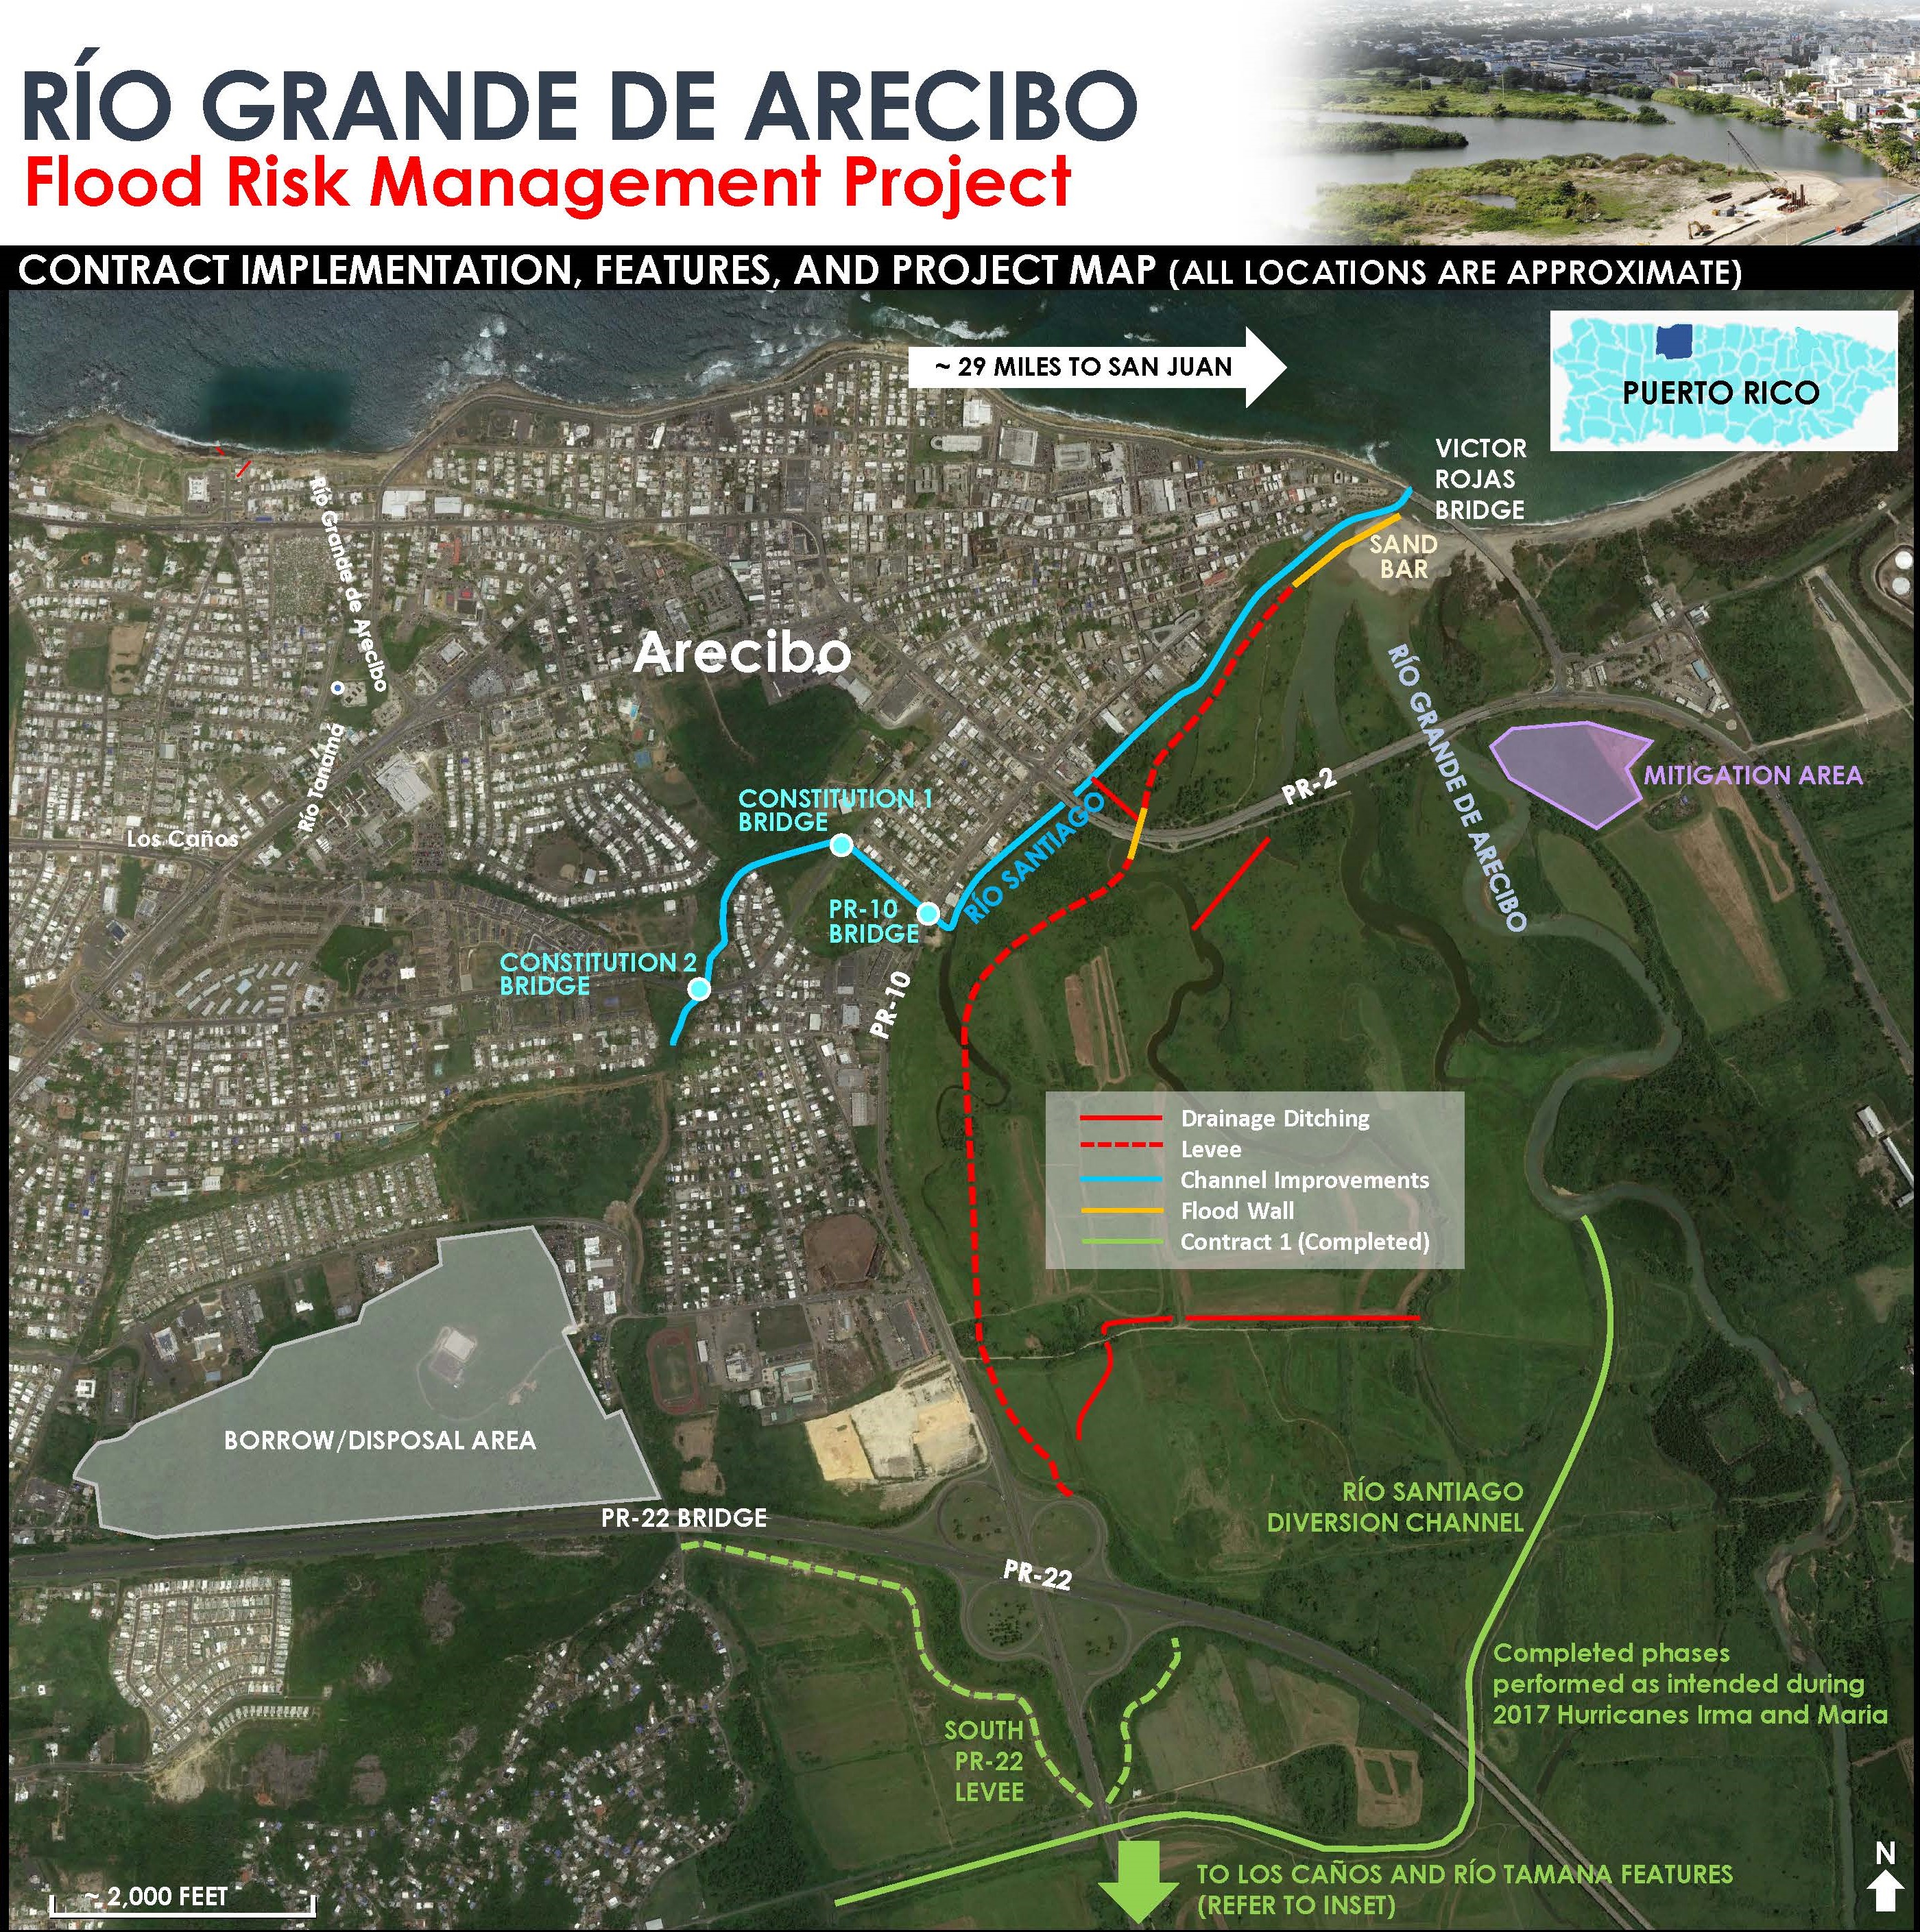 Click for full-sized Rio Grande de Arecibo Project Map